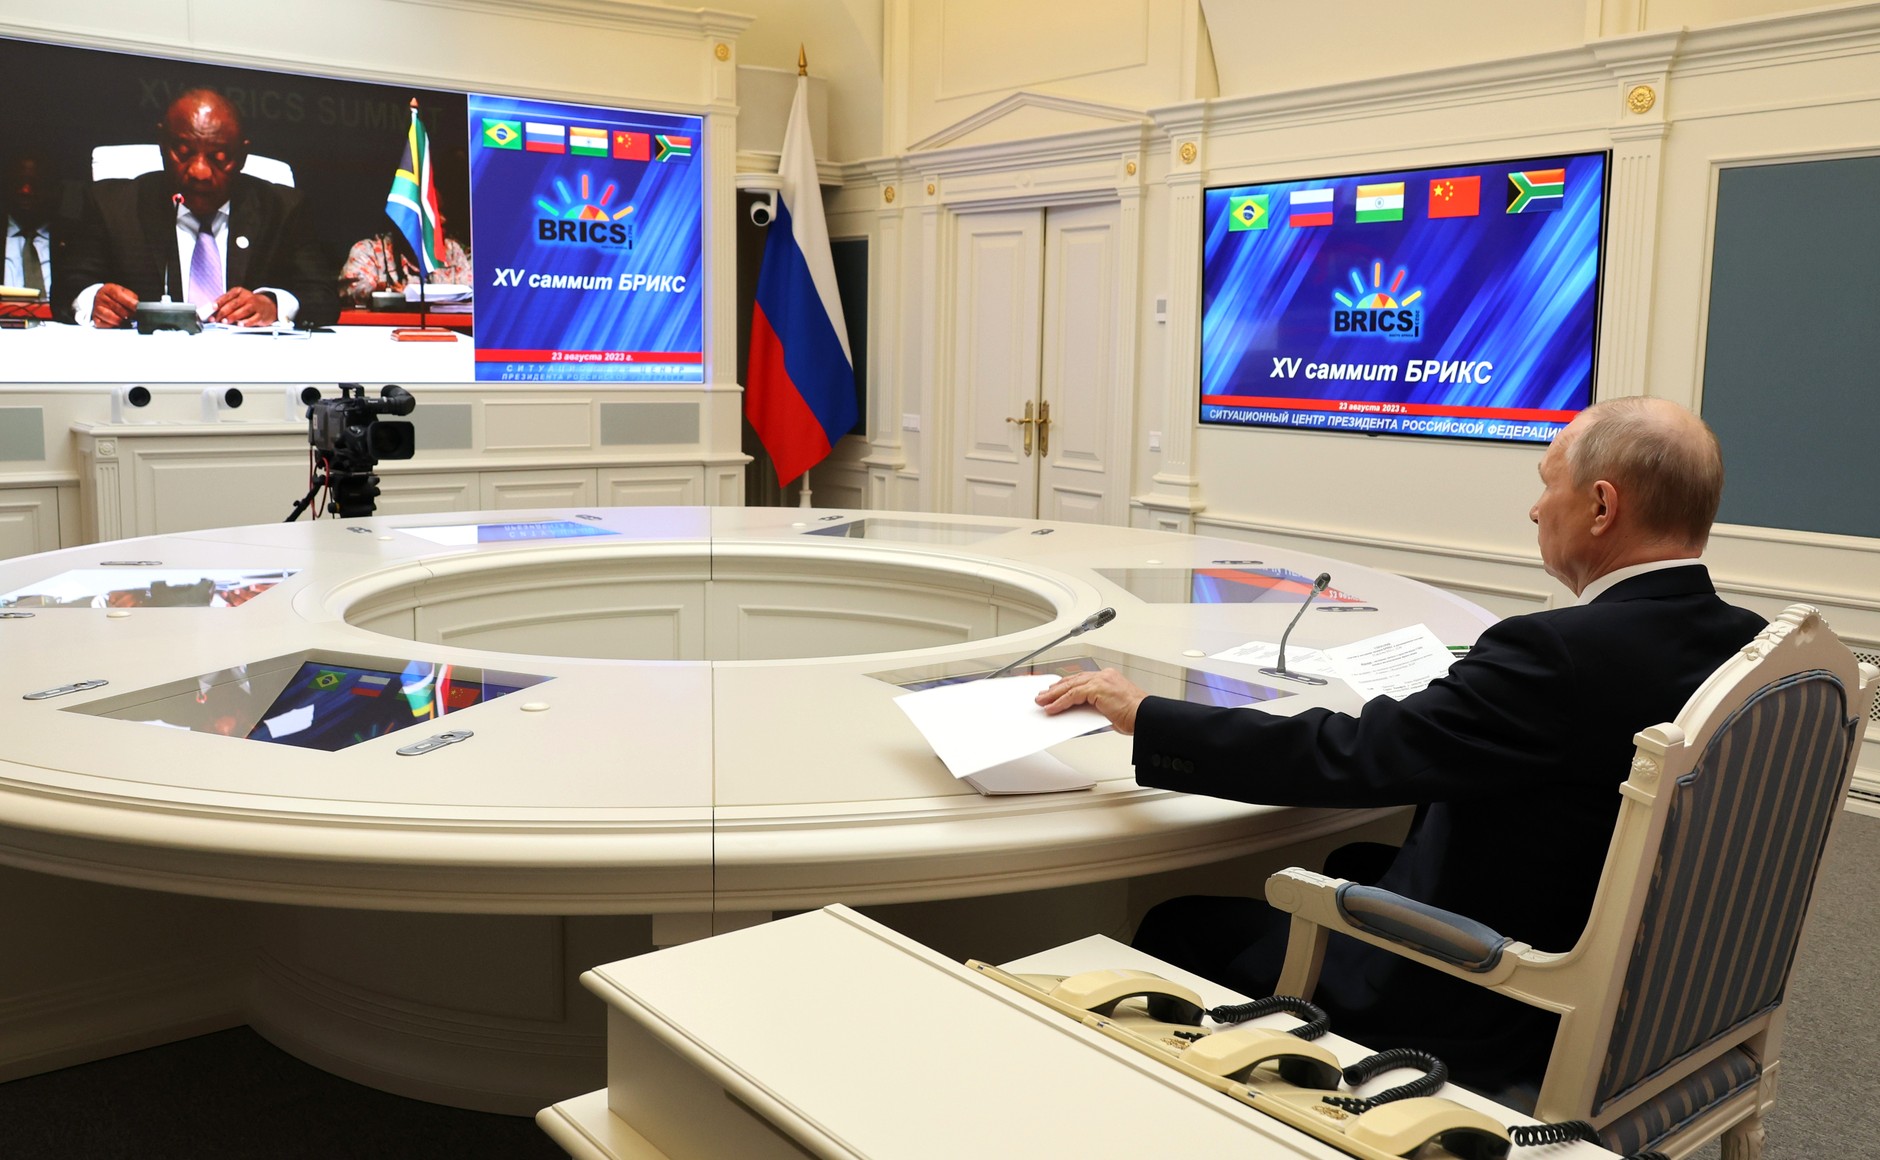 Władimir Putin łączy się z BRICS. Fot. Kancelaria Prezydenta Federacji Rosyjskiej.